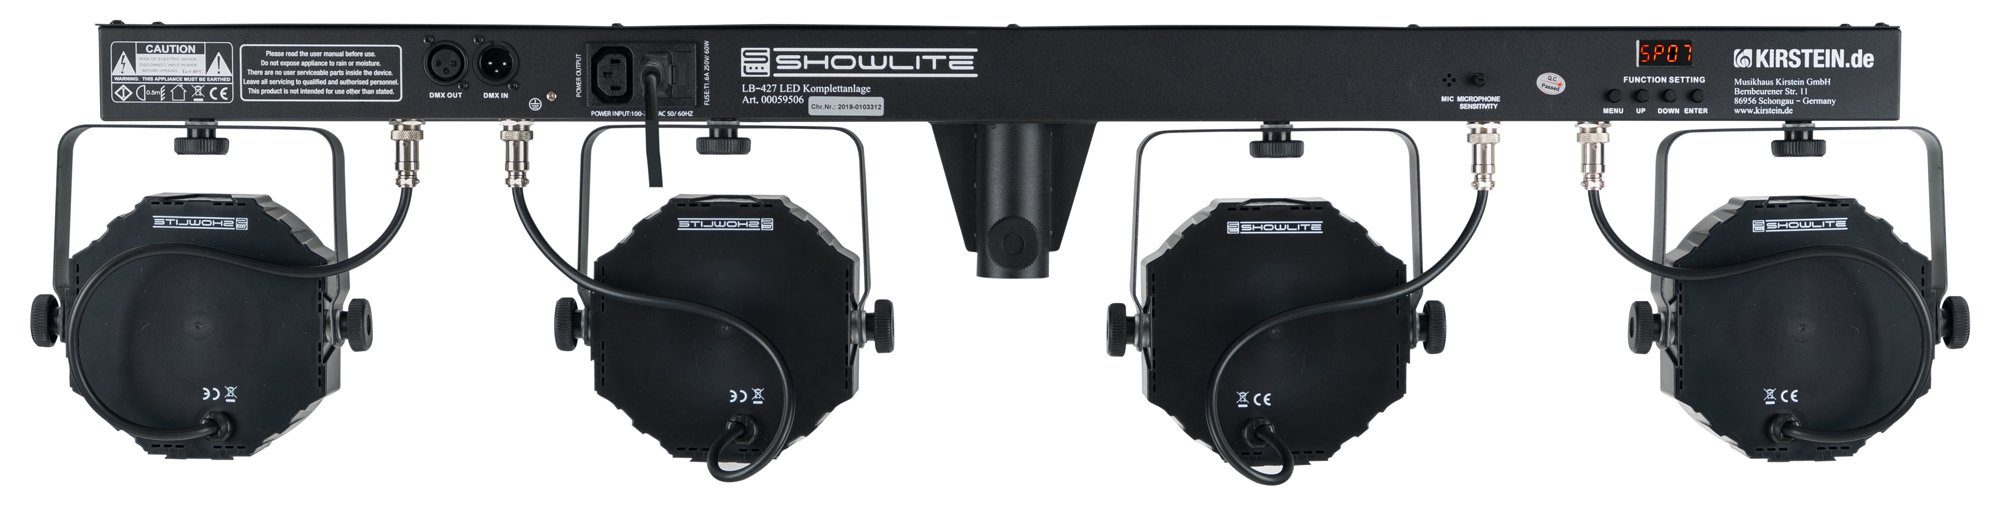 Showlite Lichtanlage LB-427 LED RGB inkl. & Stativ, Fußfernsteuerung Licht Tasche 4x DMX-Controller, PAR-Spots, Komplettanlage